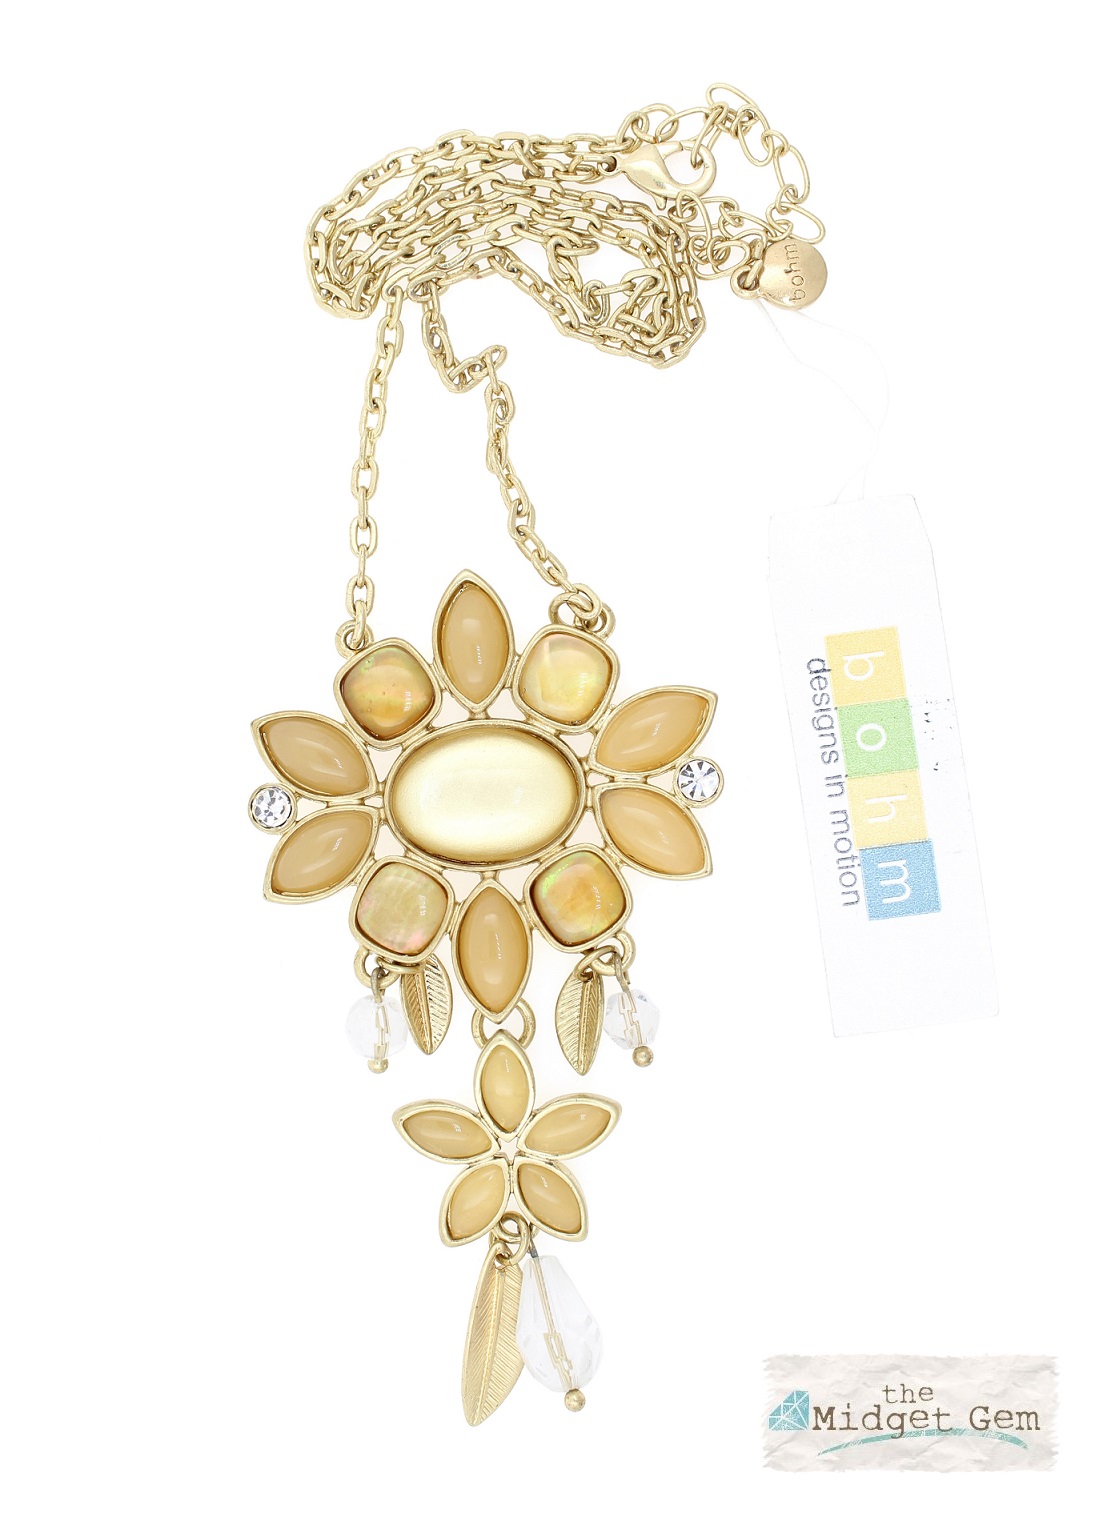 BOHM - Glass Petals Flower Pendant Necklace - Oxidised Gold/Sandy Beige BNWT